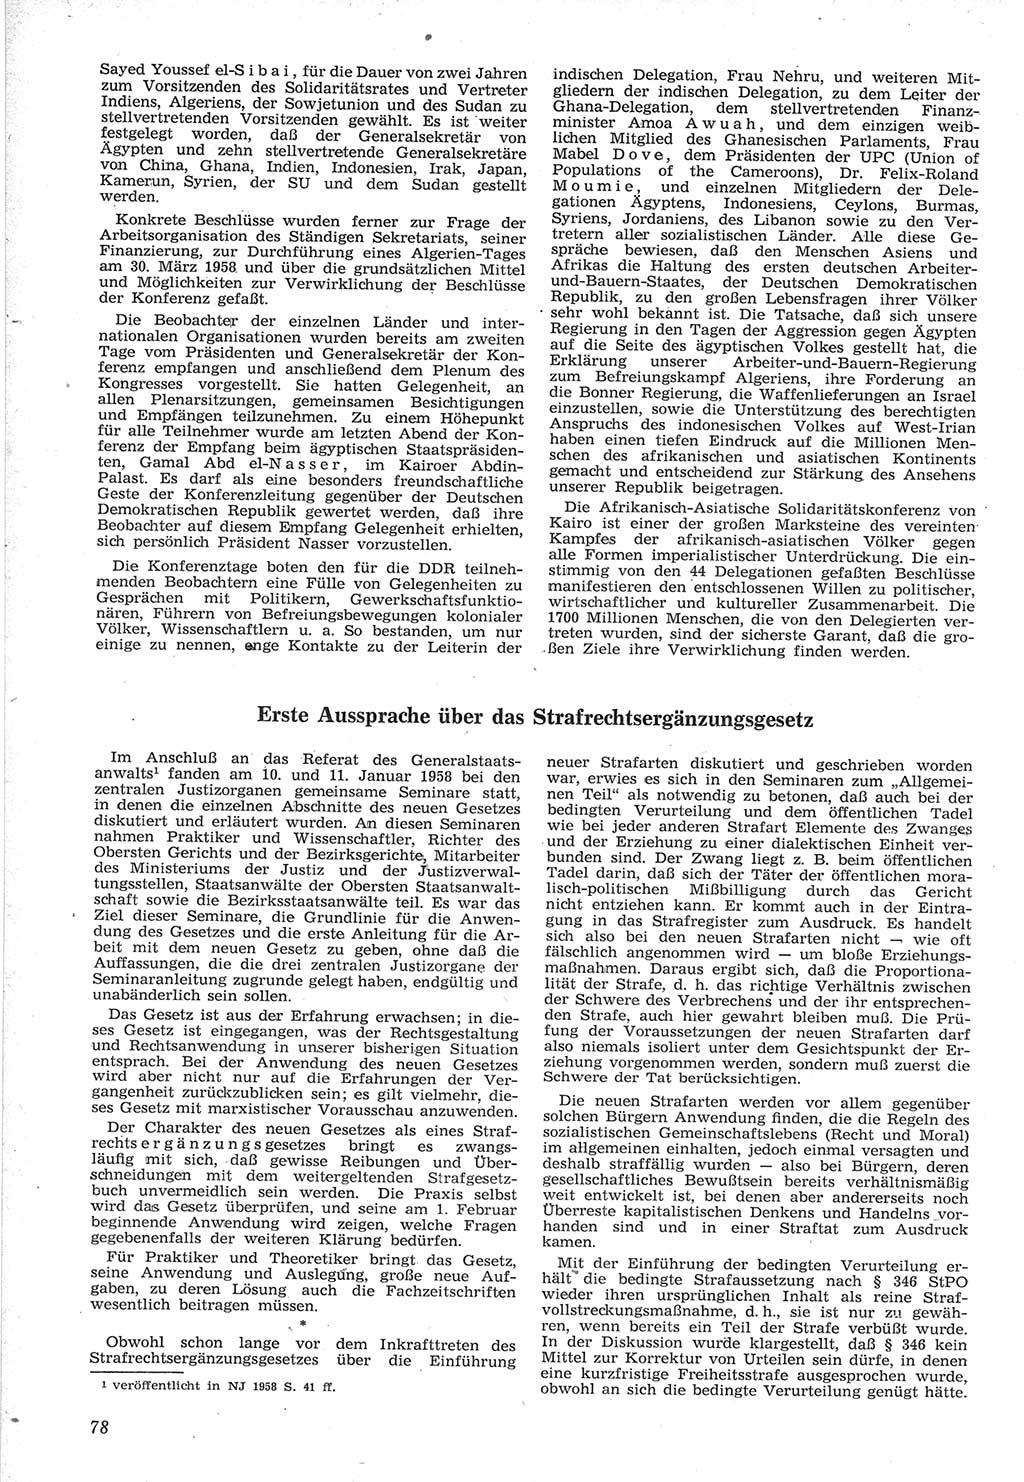 Neue Justiz (NJ), Zeitschrift für Recht und Rechtswissenschaft [Deutsche Demokratische Republik (DDR)], 12. Jahrgang 1958, Seite 78 (NJ DDR 1958, S. 78)